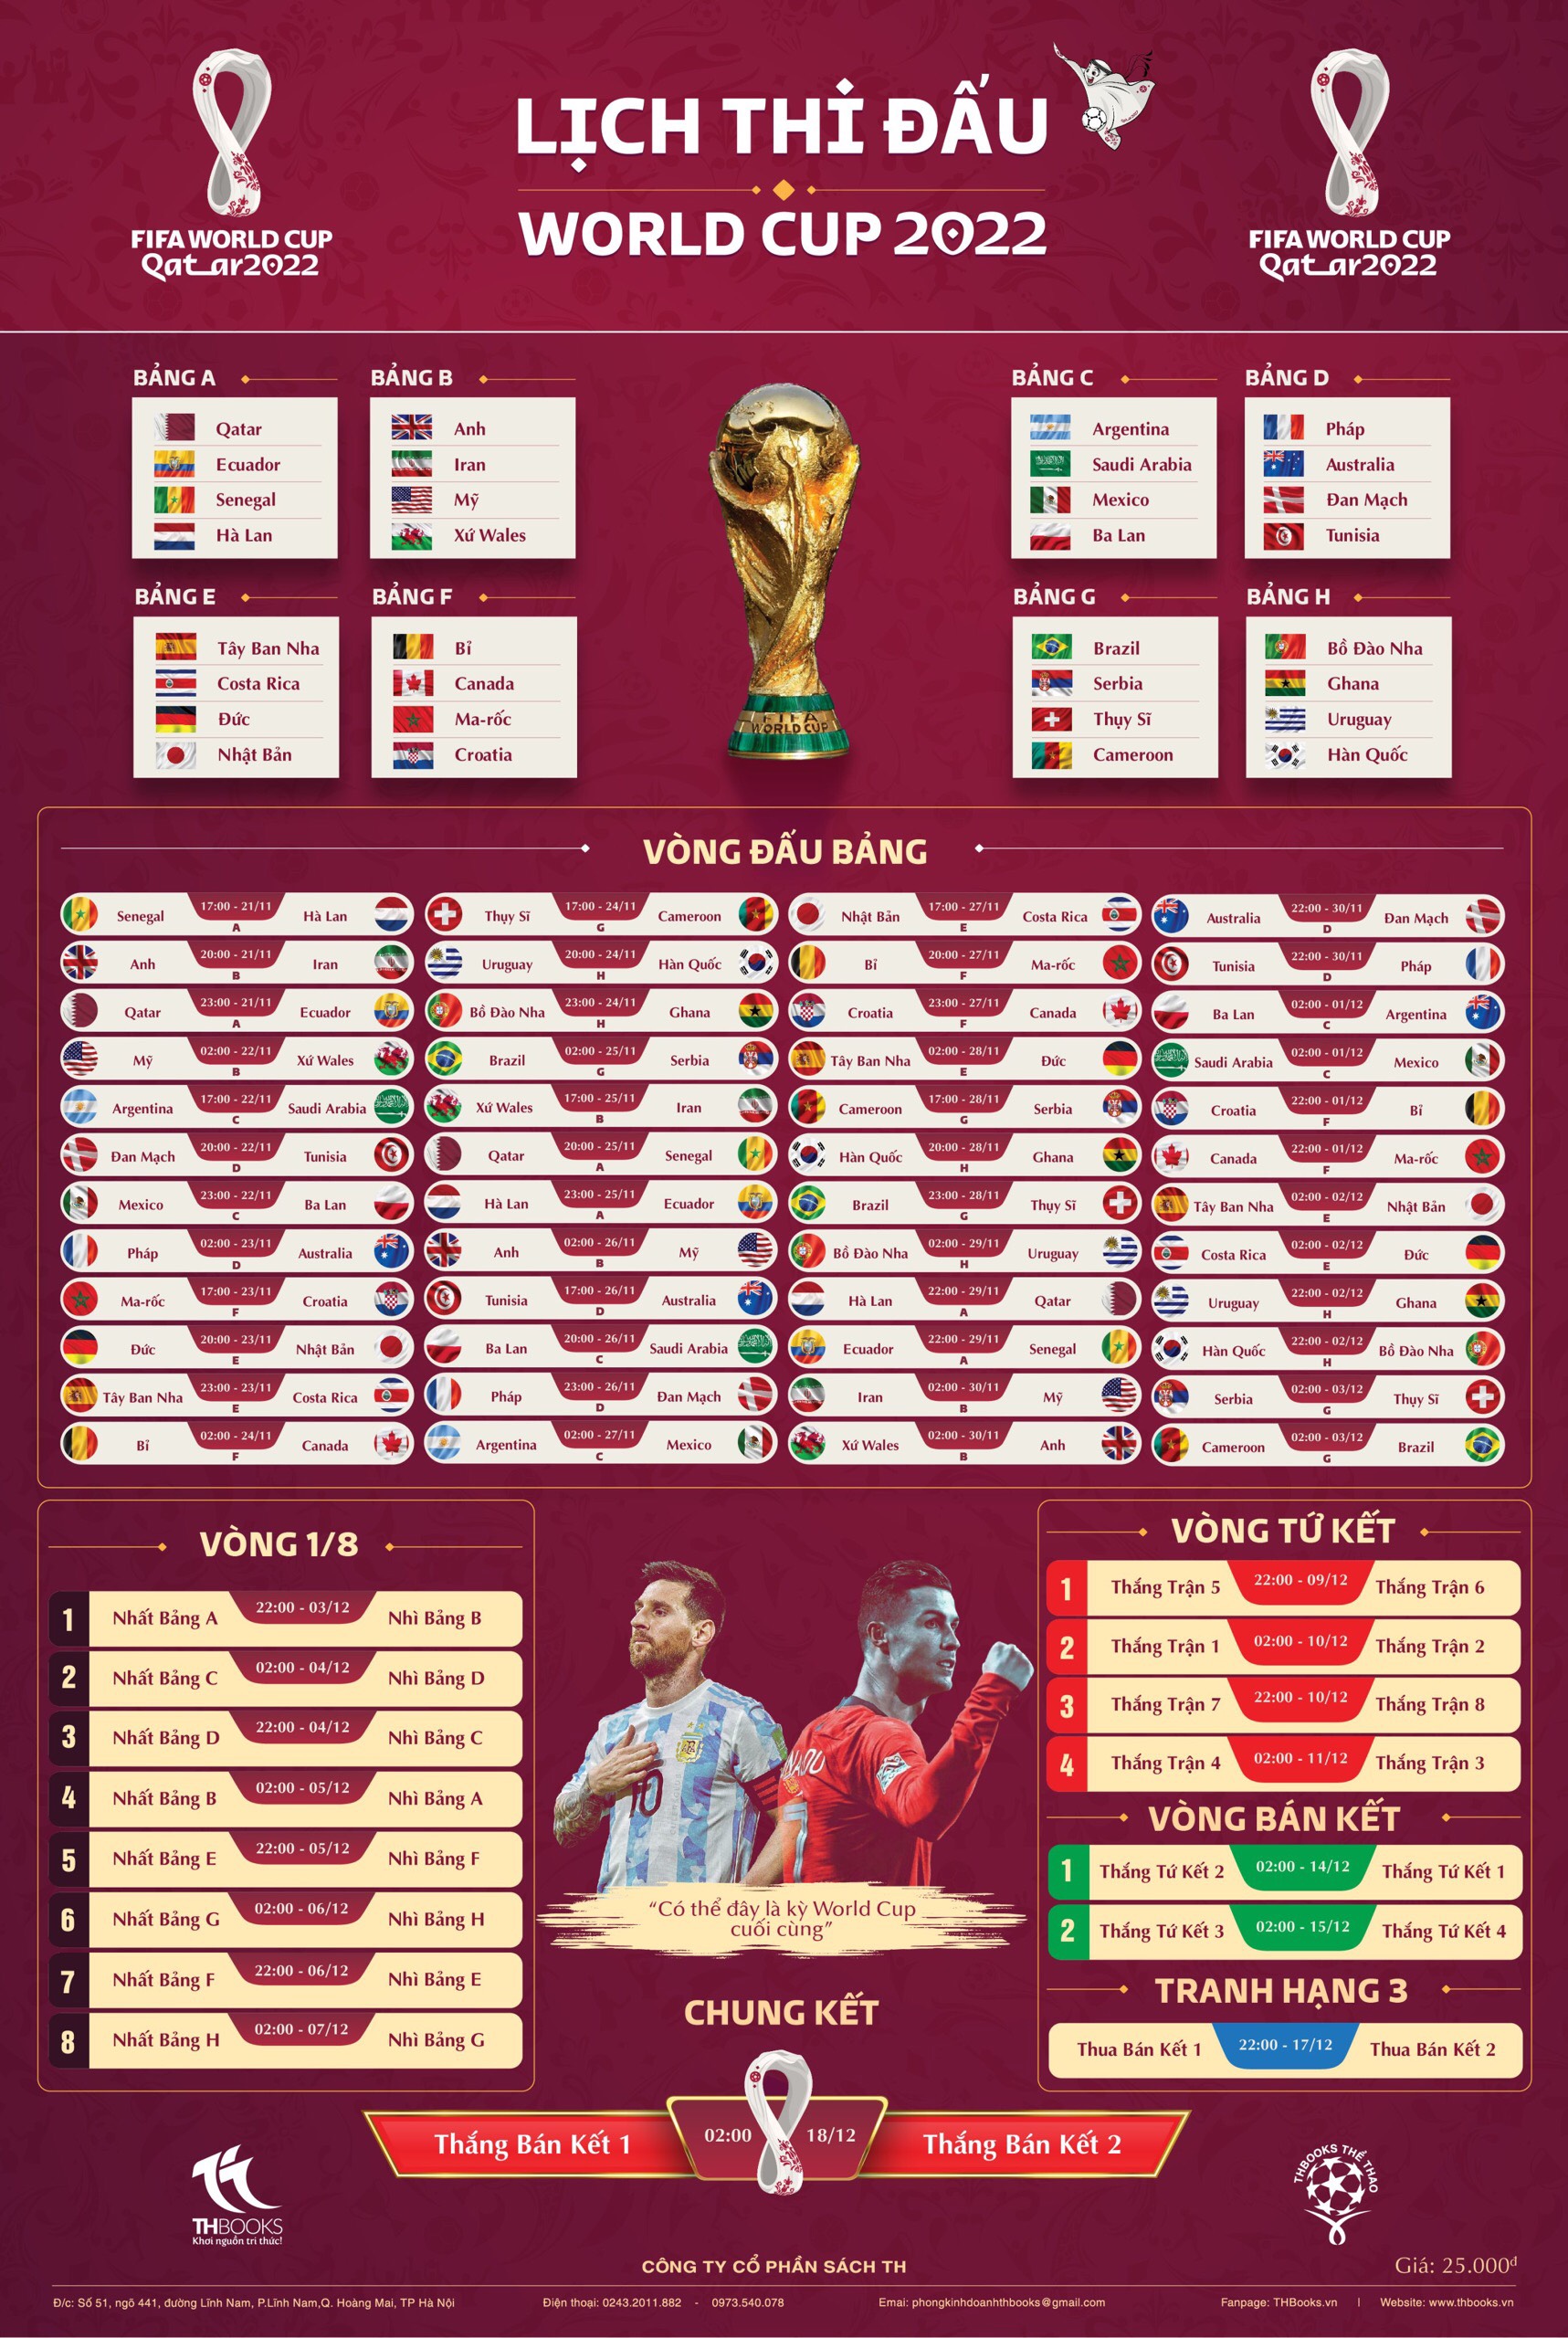 LỊCH THI ĐẤU CHÍNH THỨC WORLD CUP 2022 GIỜ VIỆT NAM